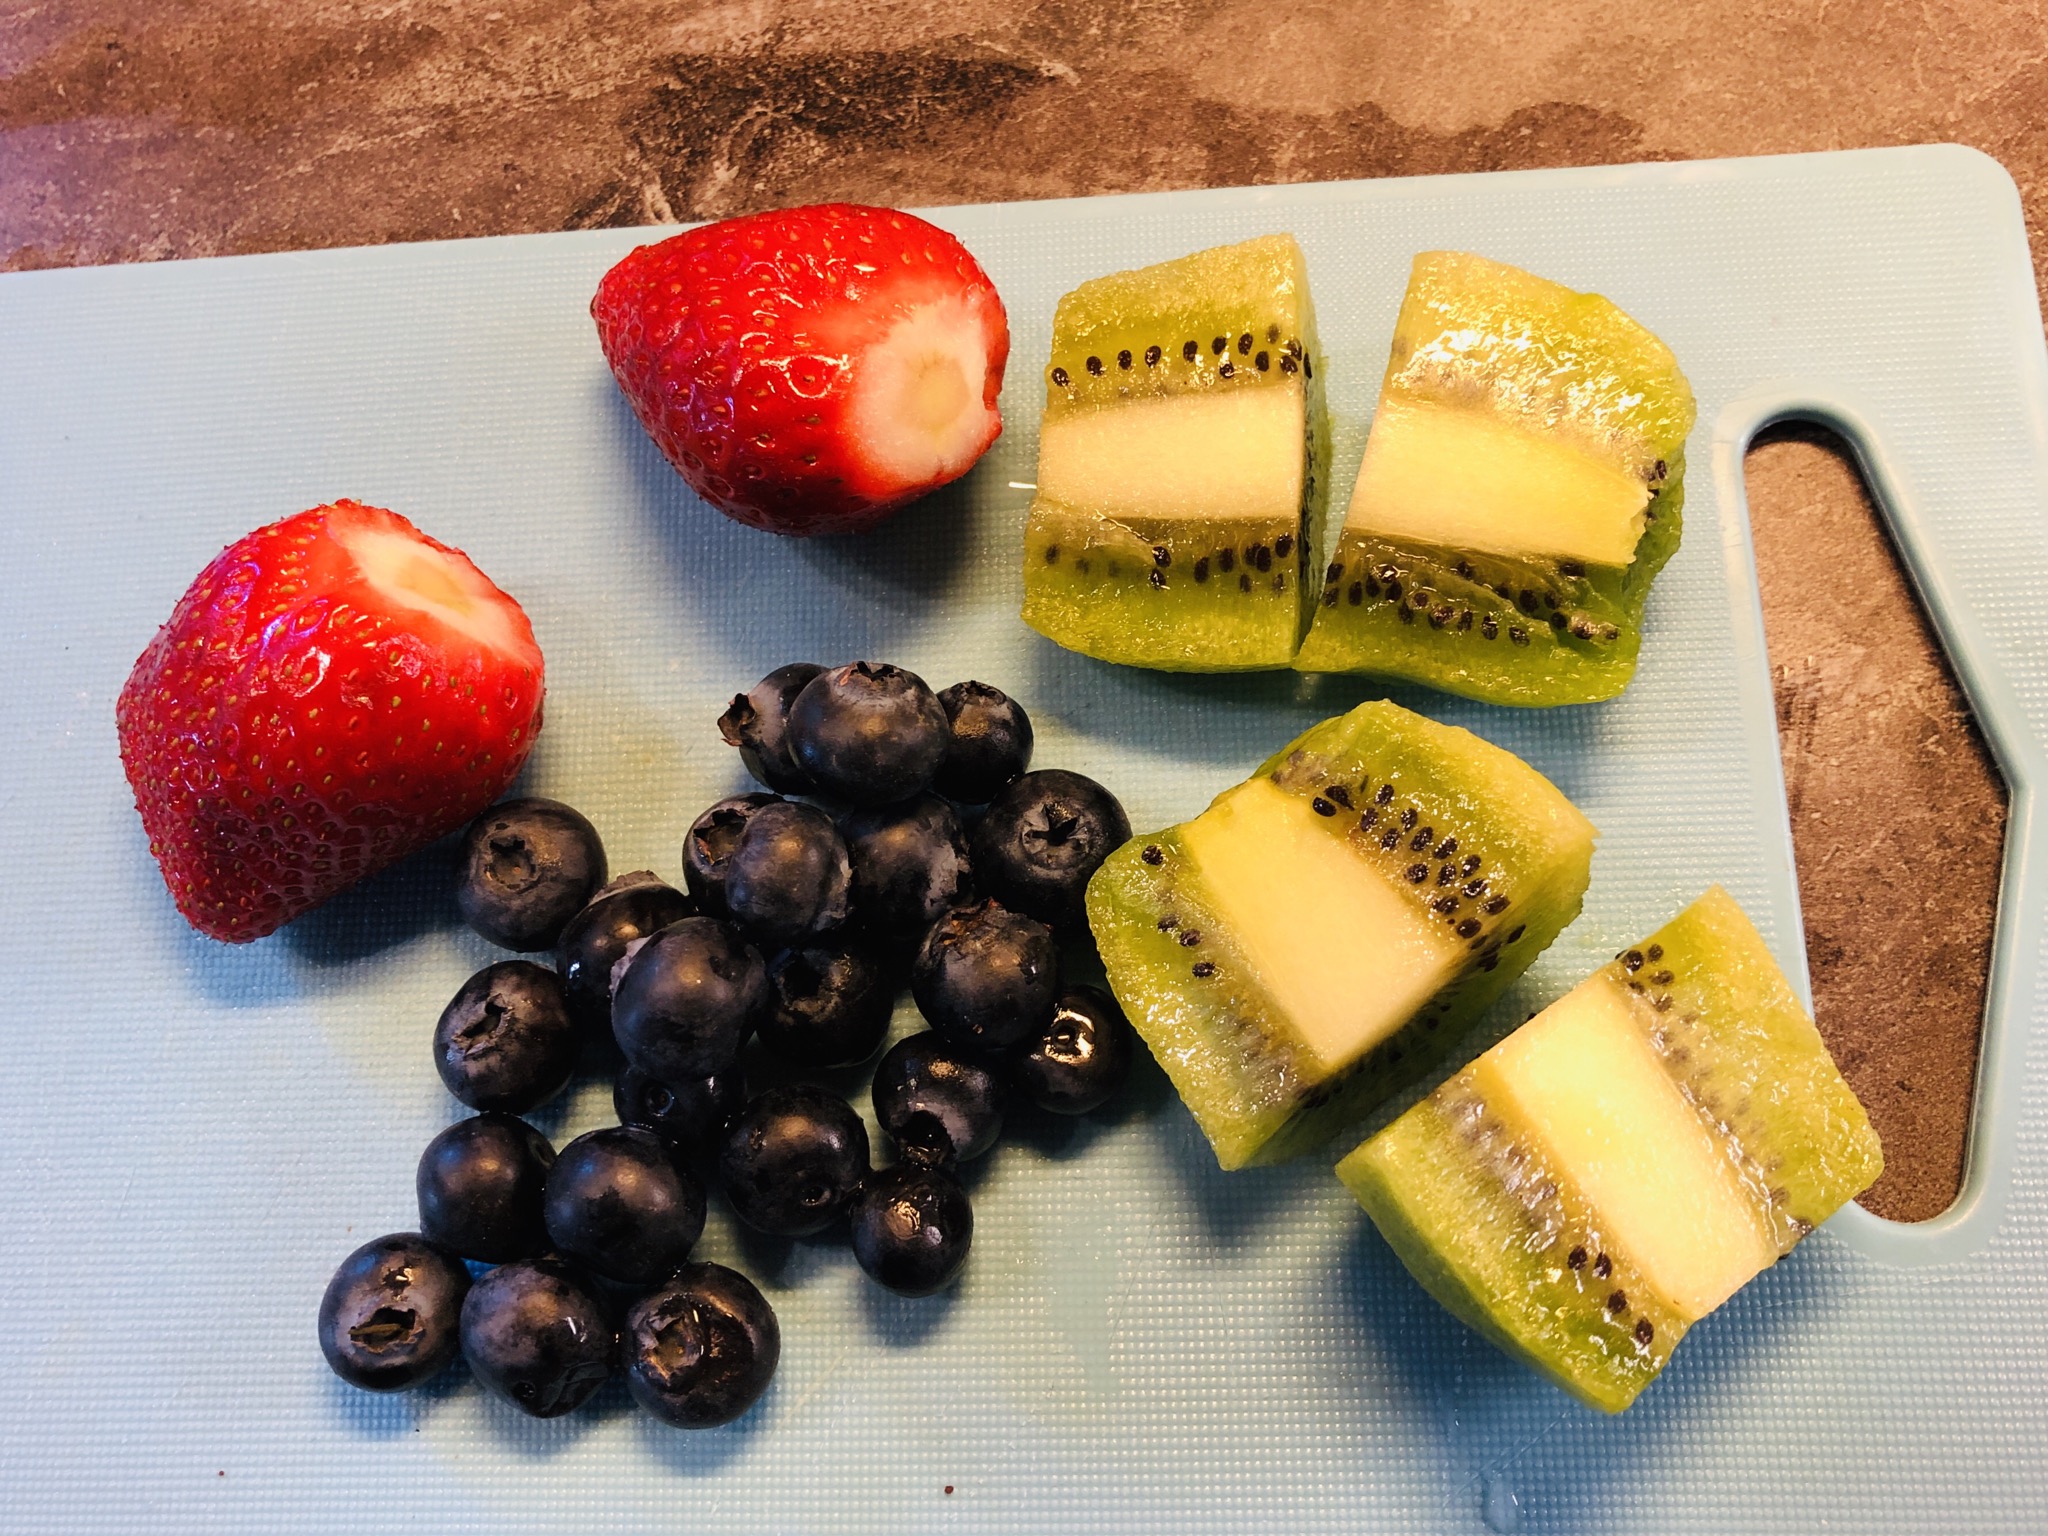 Bild zum Schritt 1 für das Bastel- und DIY-Abenteuer für Kinder: 'Frisches Obst (2 Erdbeeren, eine Hand voll Heidelbeeren) waschen, Kiwi...'